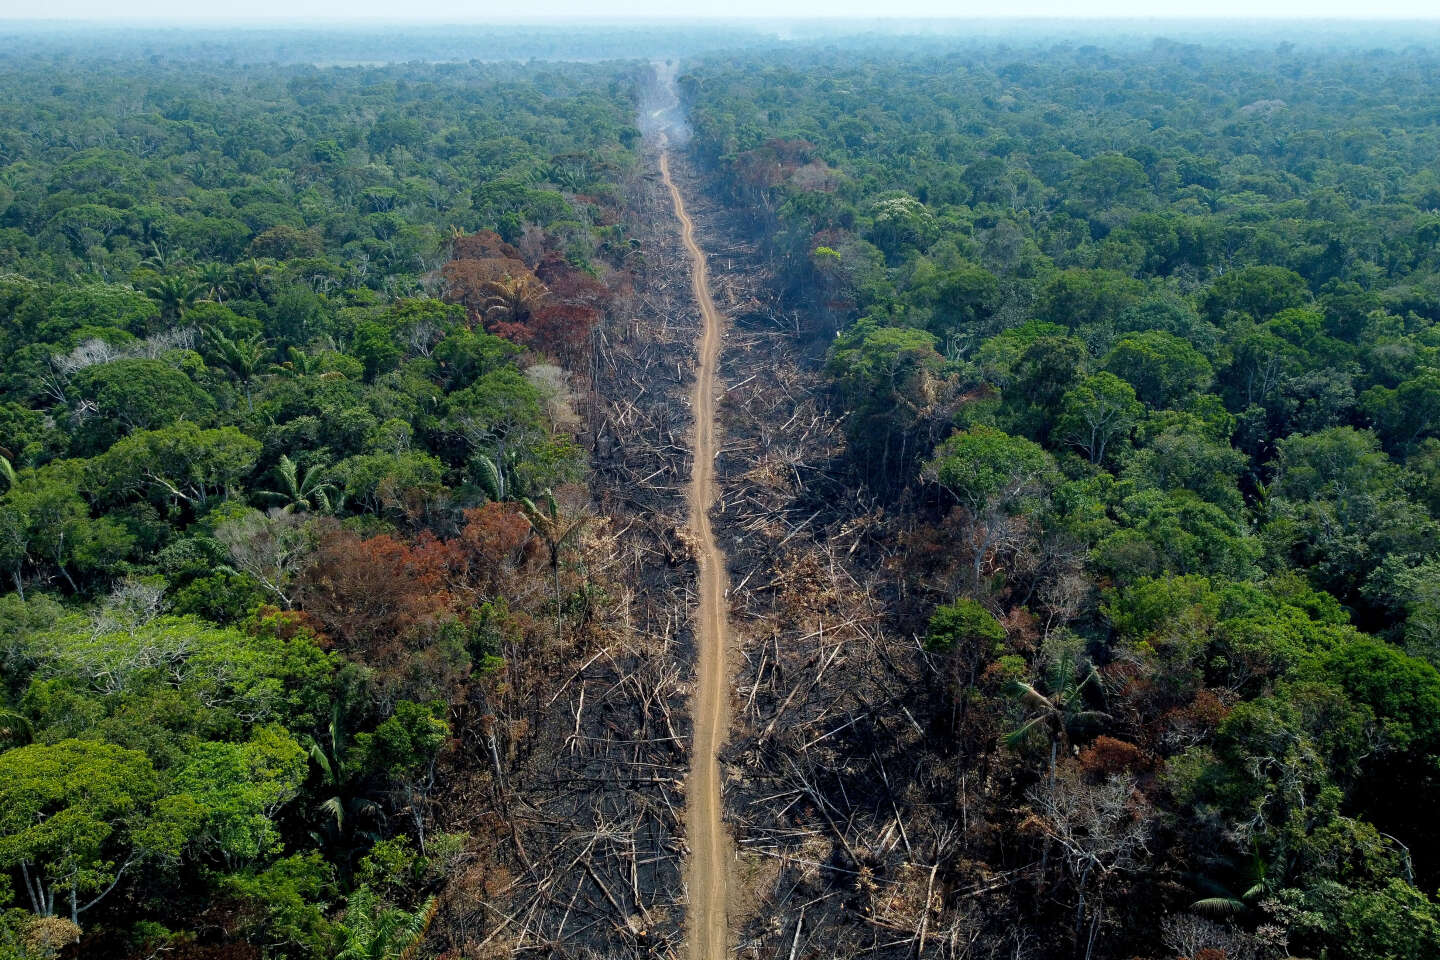 Het Amazone-regenwoud wordt in een ongekend tempo vernietigd door menselijke activiteiten